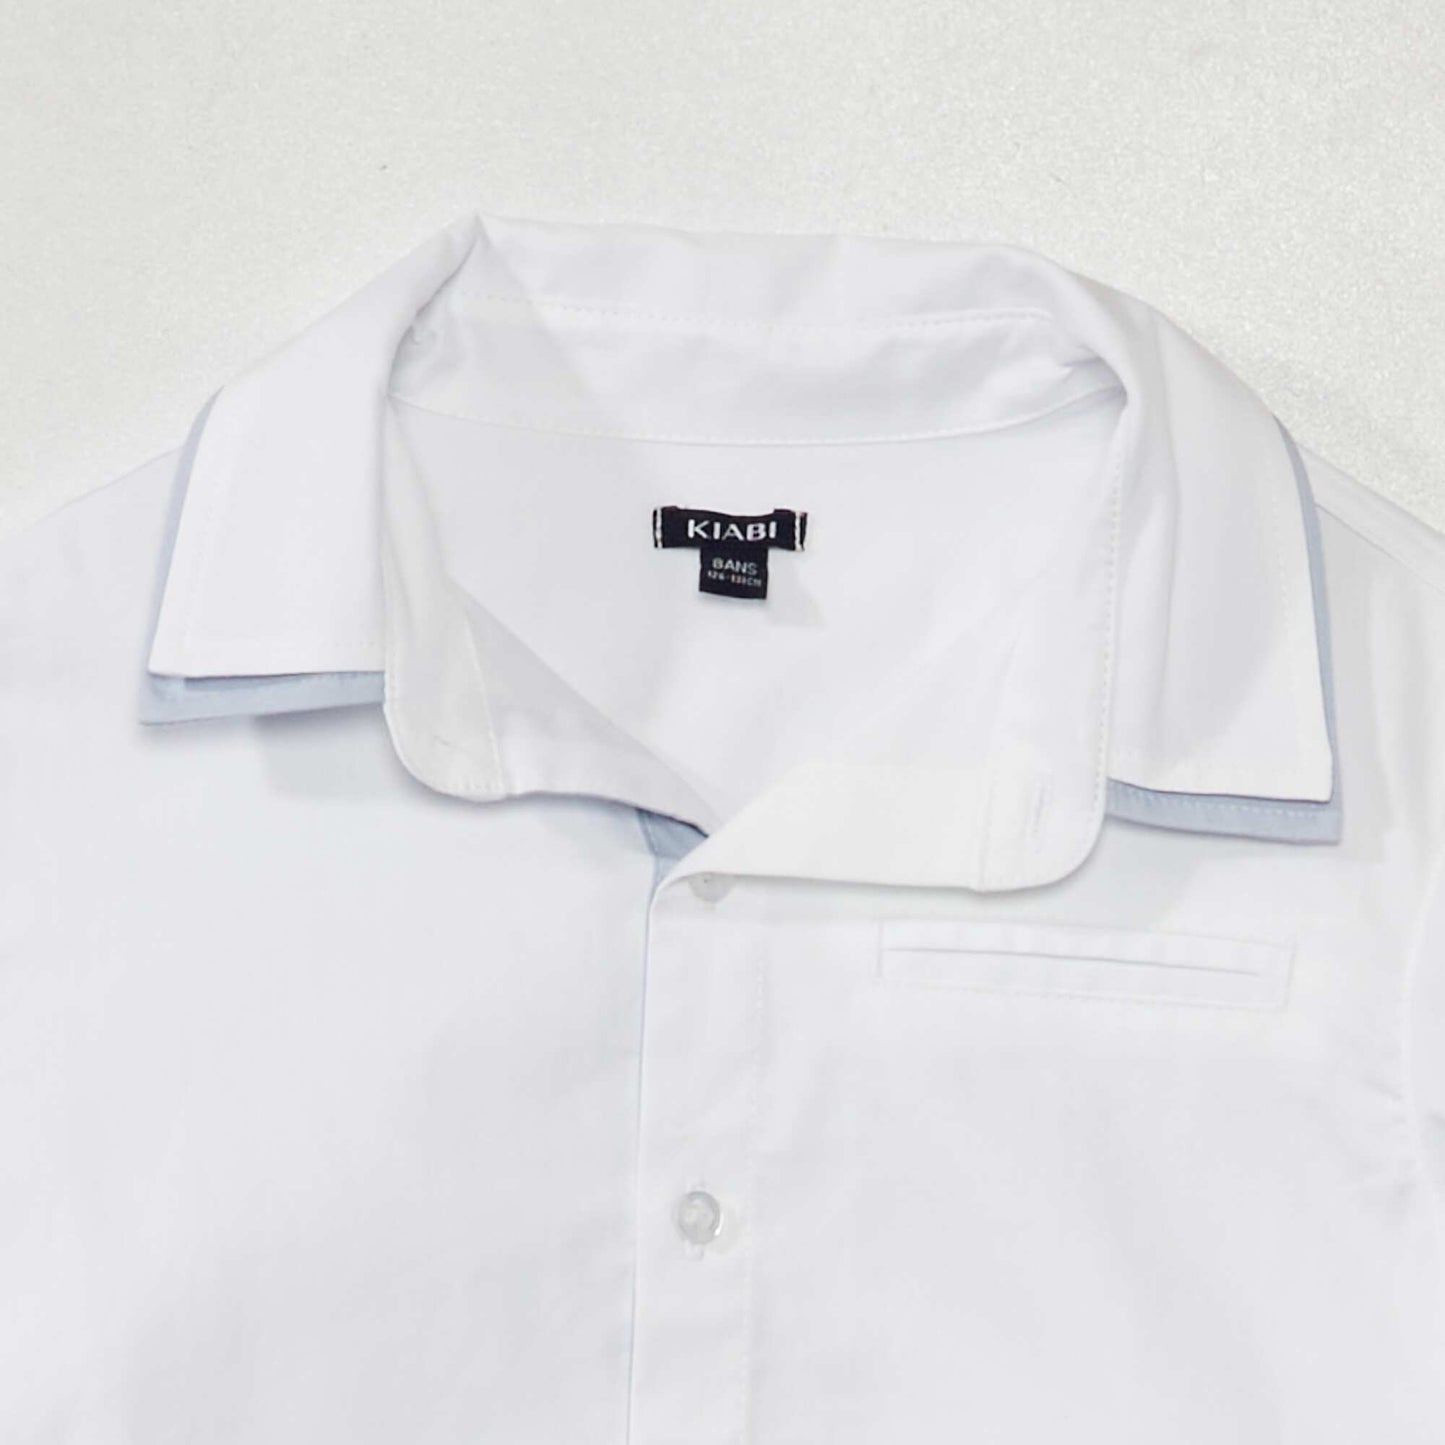 Long-sleeved shirt White